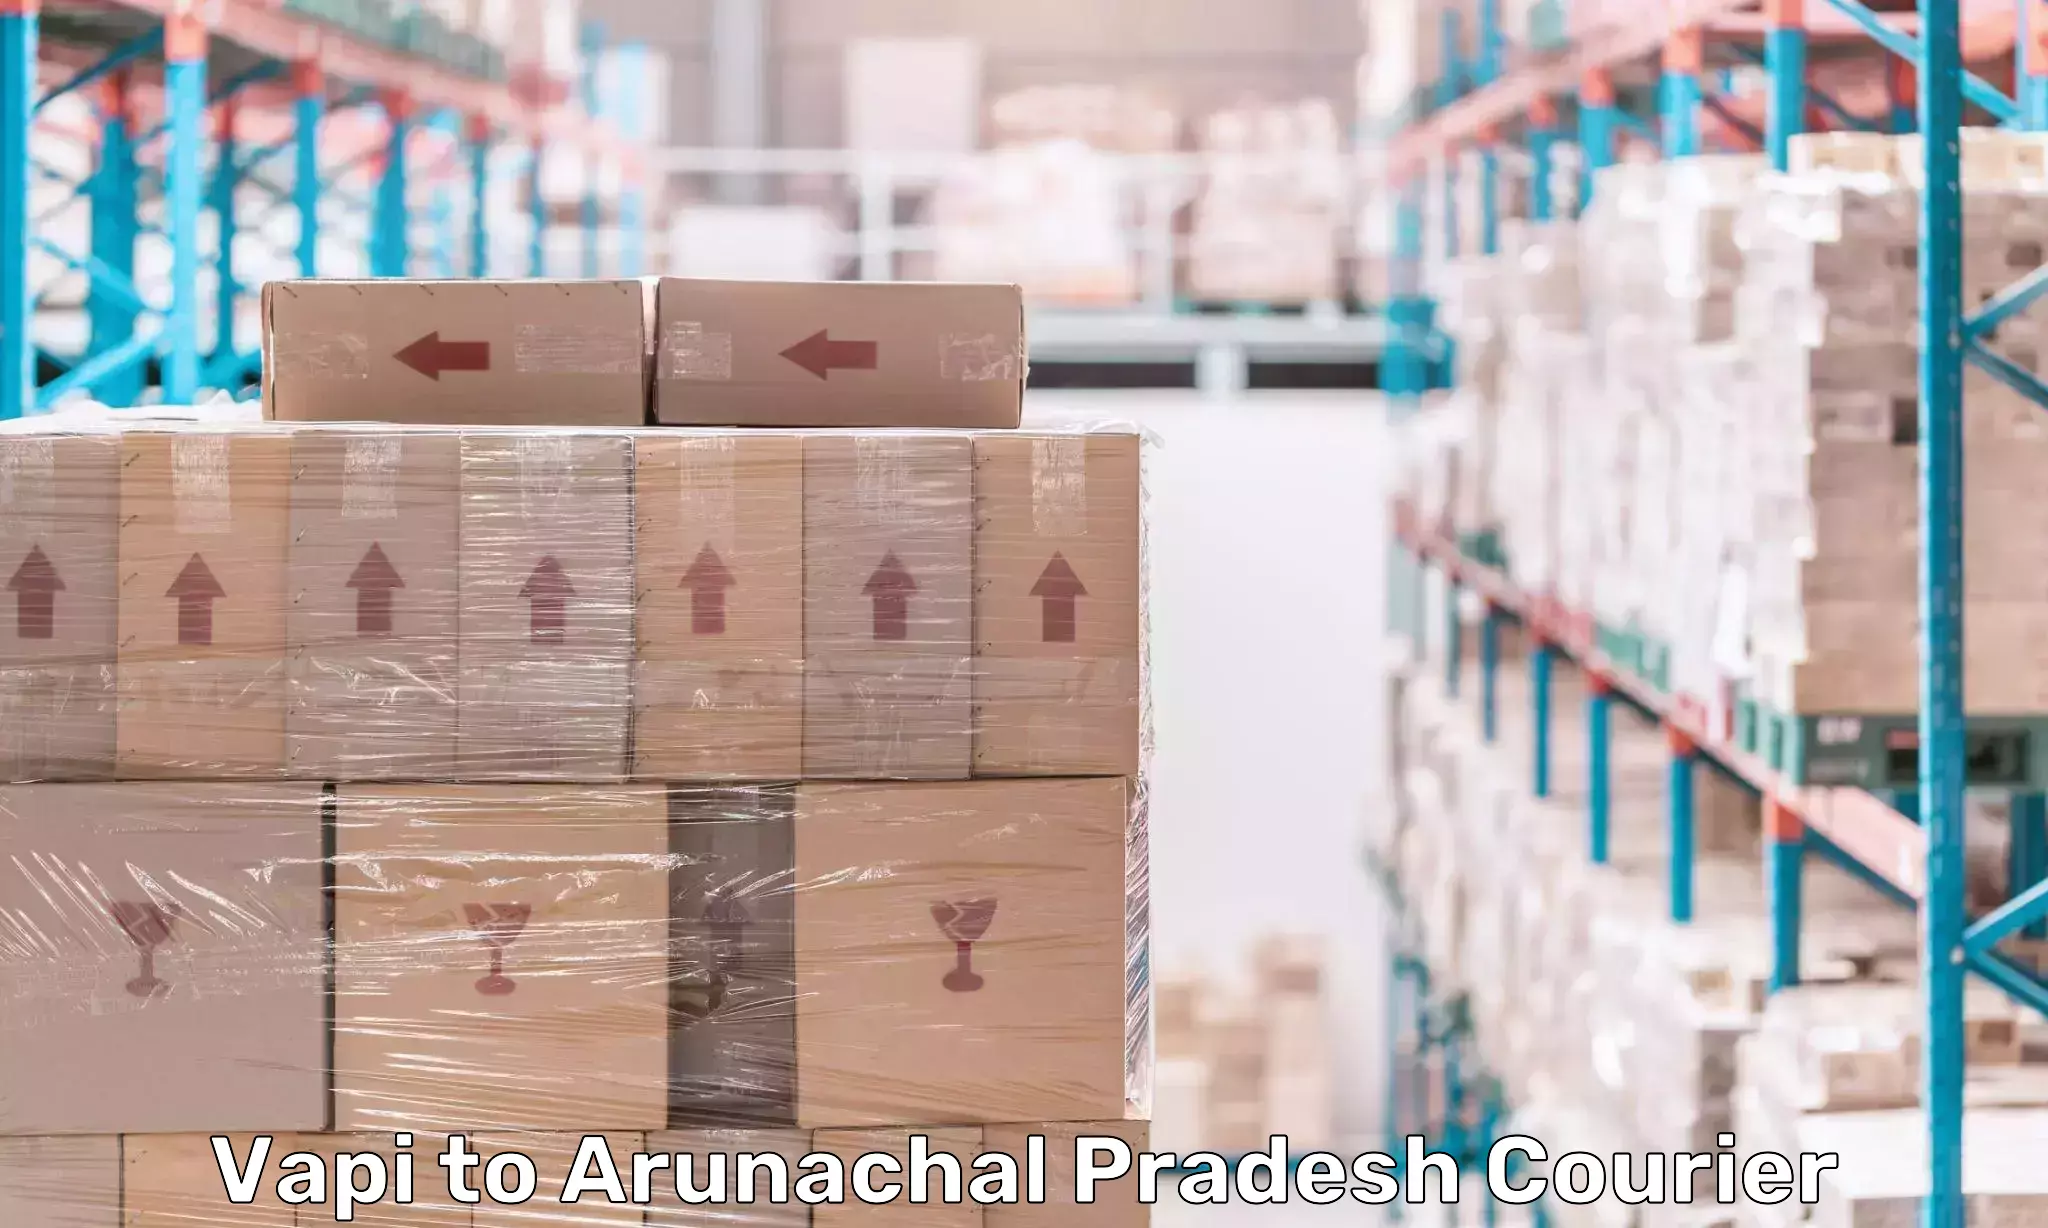 Digital shipping tools Vapi to Arunachal Pradesh